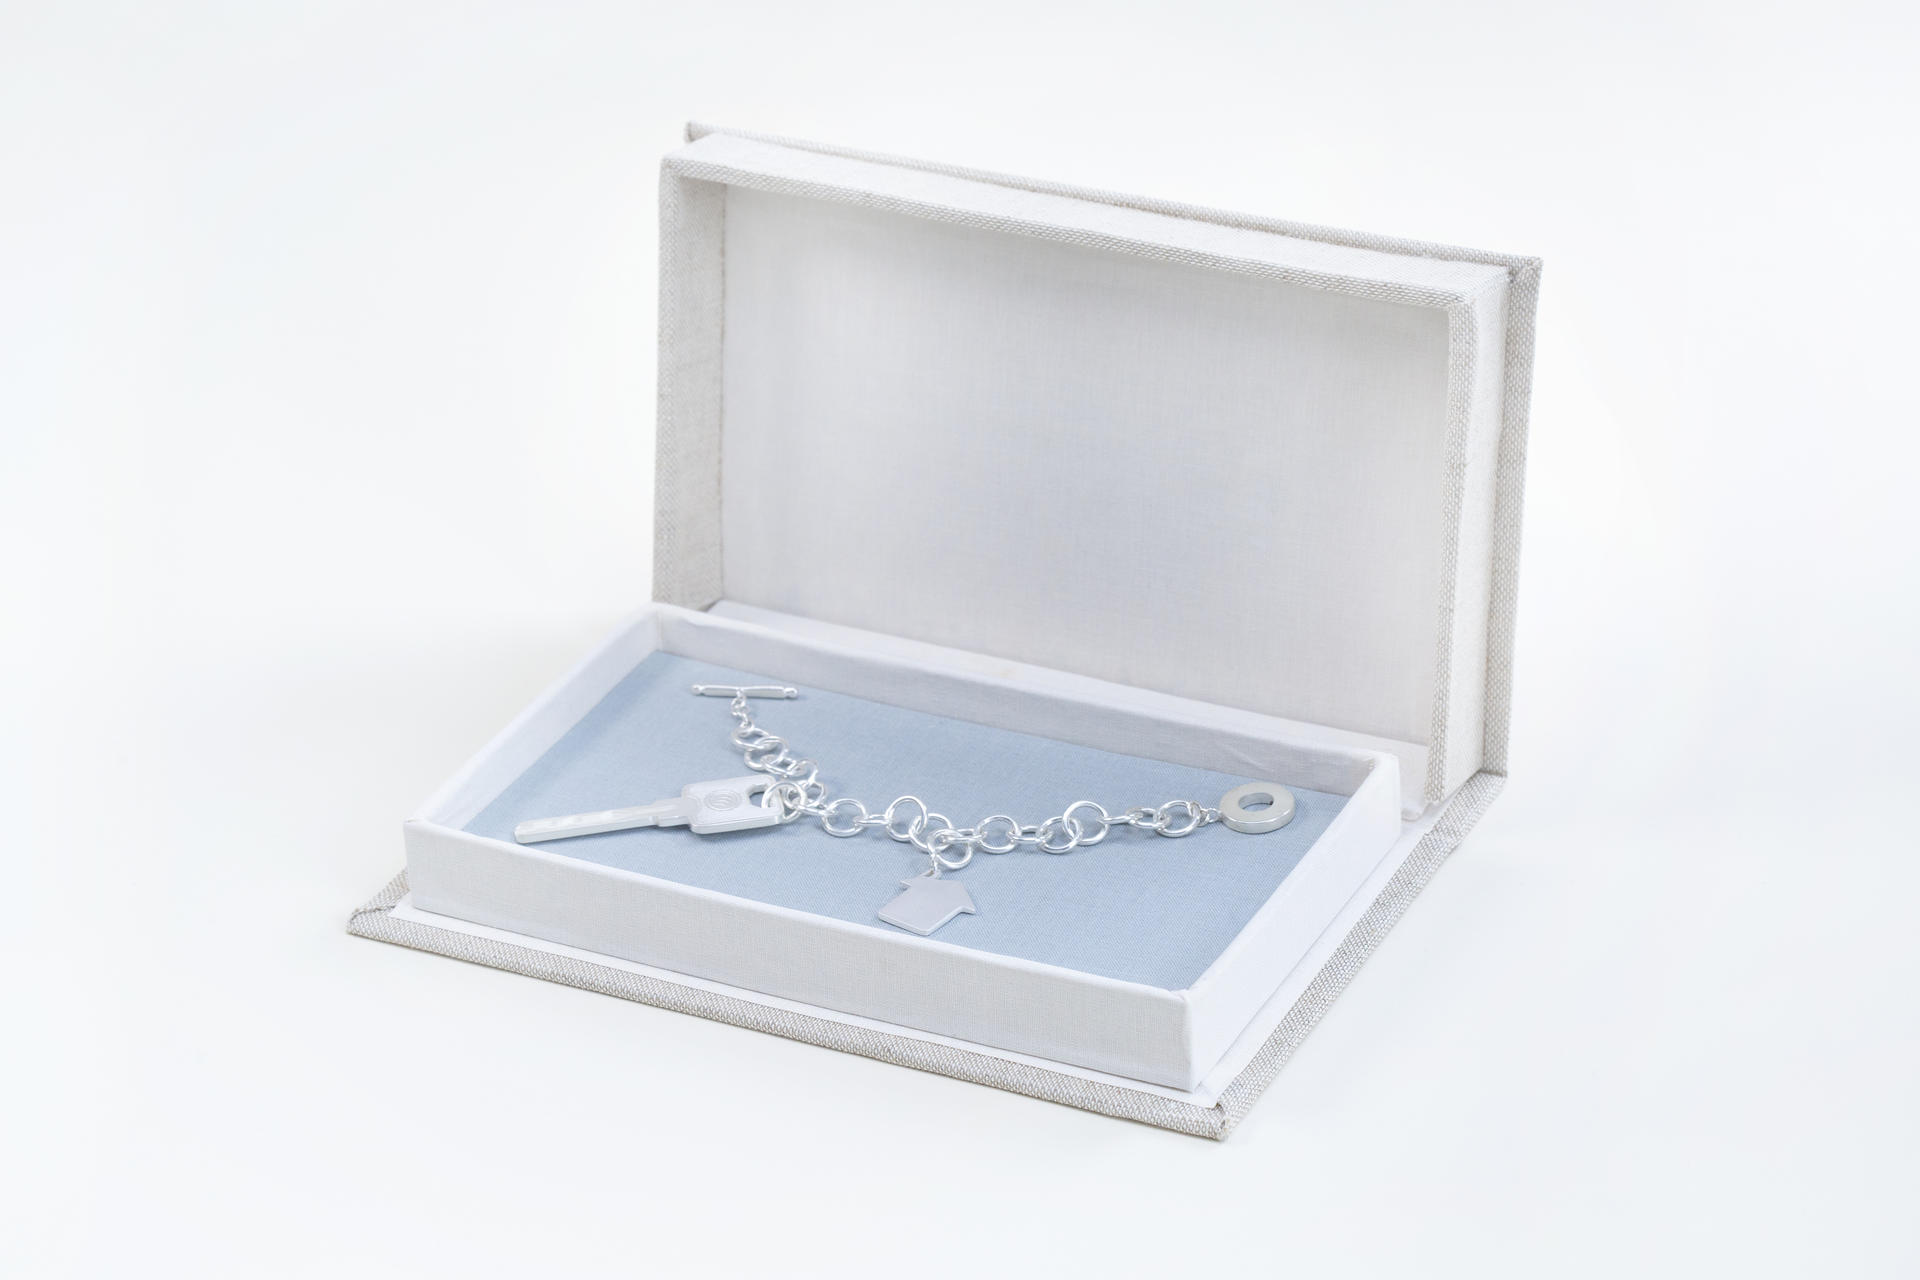 邮编435000 (Please return to 435000) is a bracelet encased in a handmade clamshell box